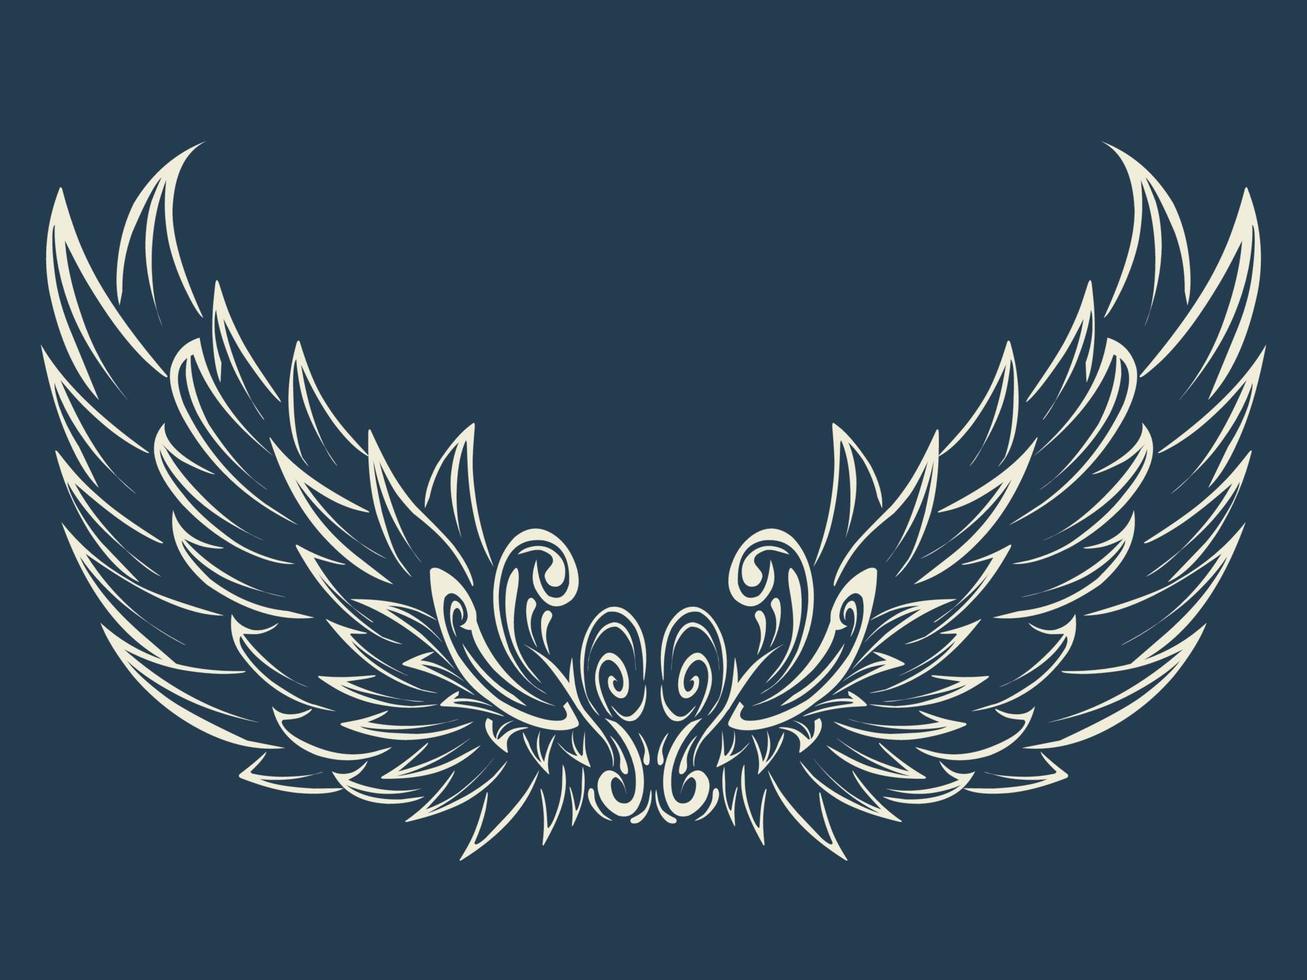 conception d'illustration vectorielle gratuite du logo des ailes d'ange blanc vecteur